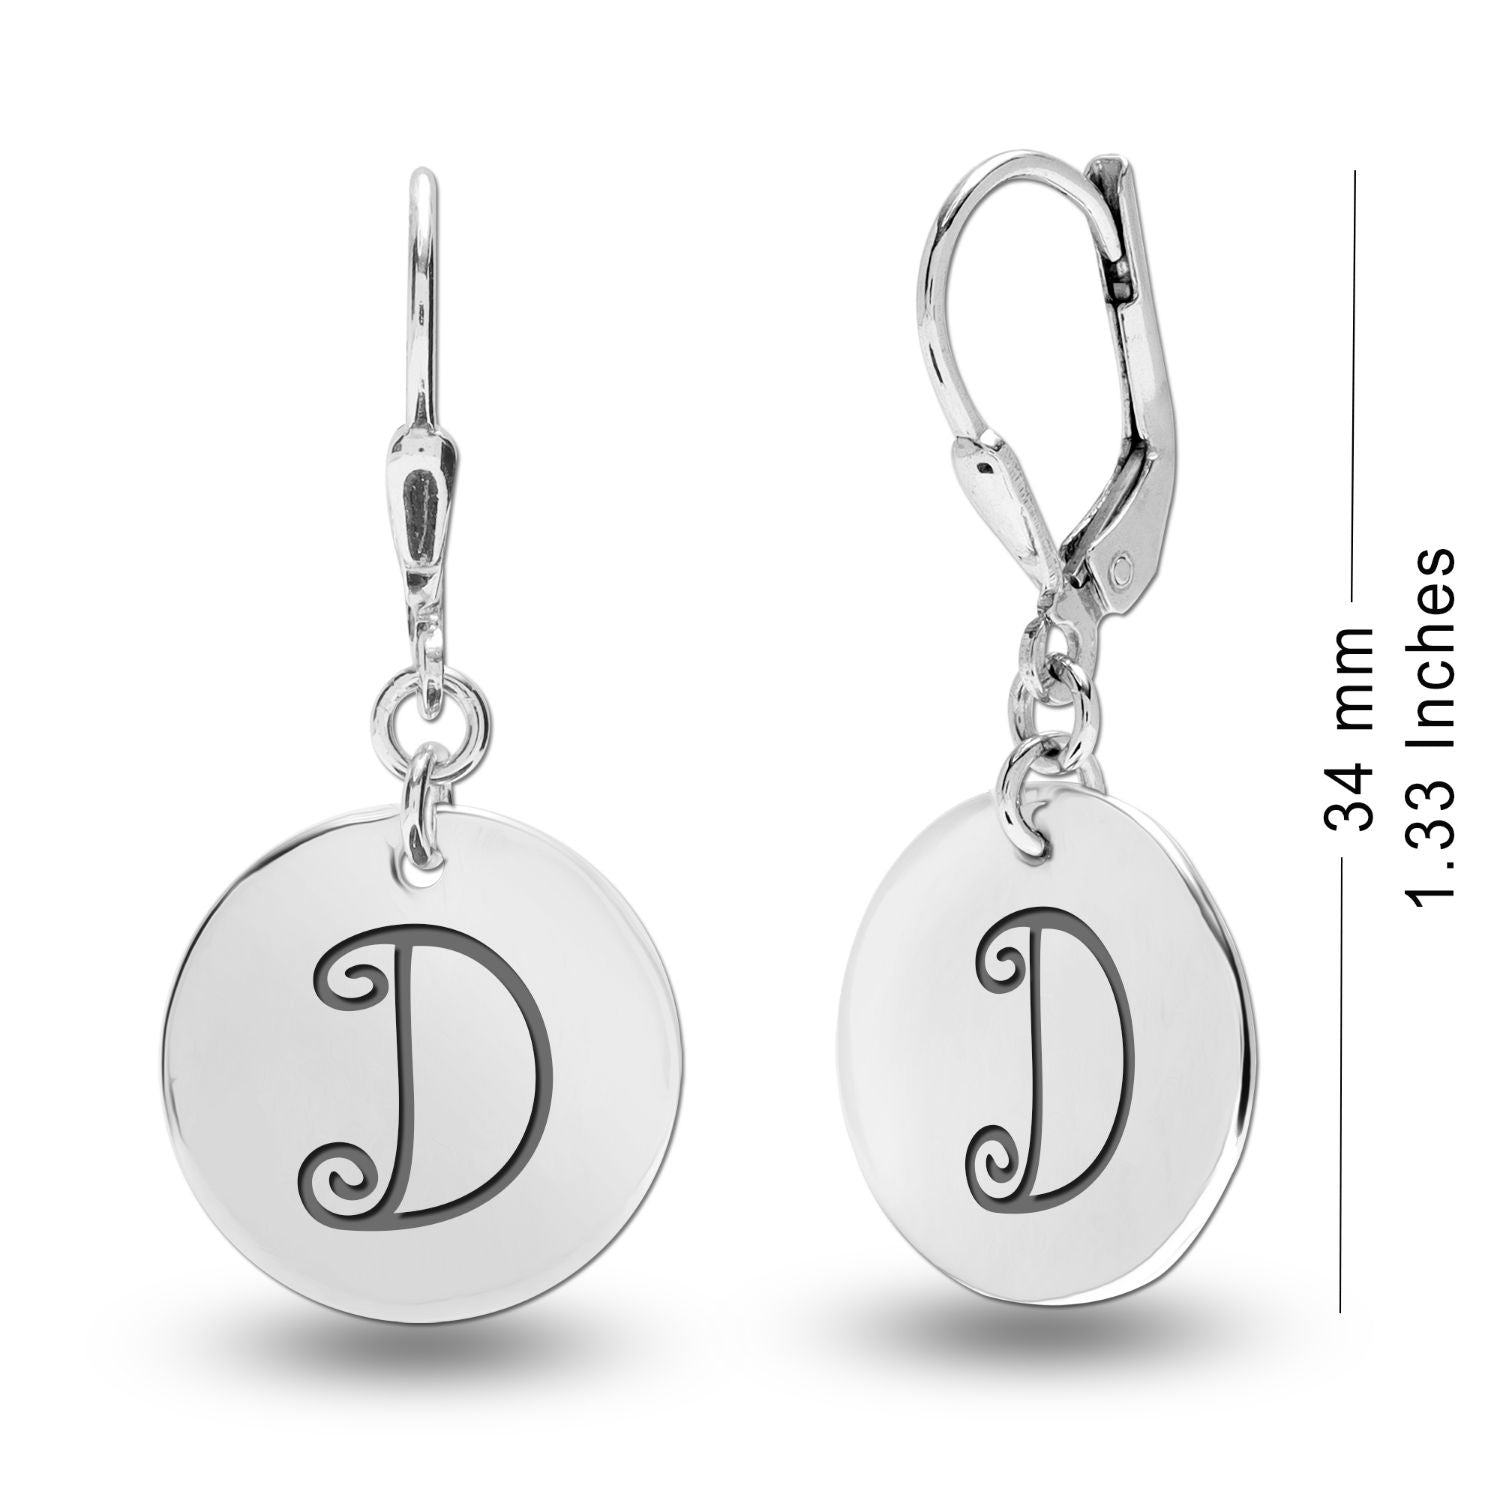 Personalised 925 Sterling Silver Monogram Initial Earrings for Teen Women